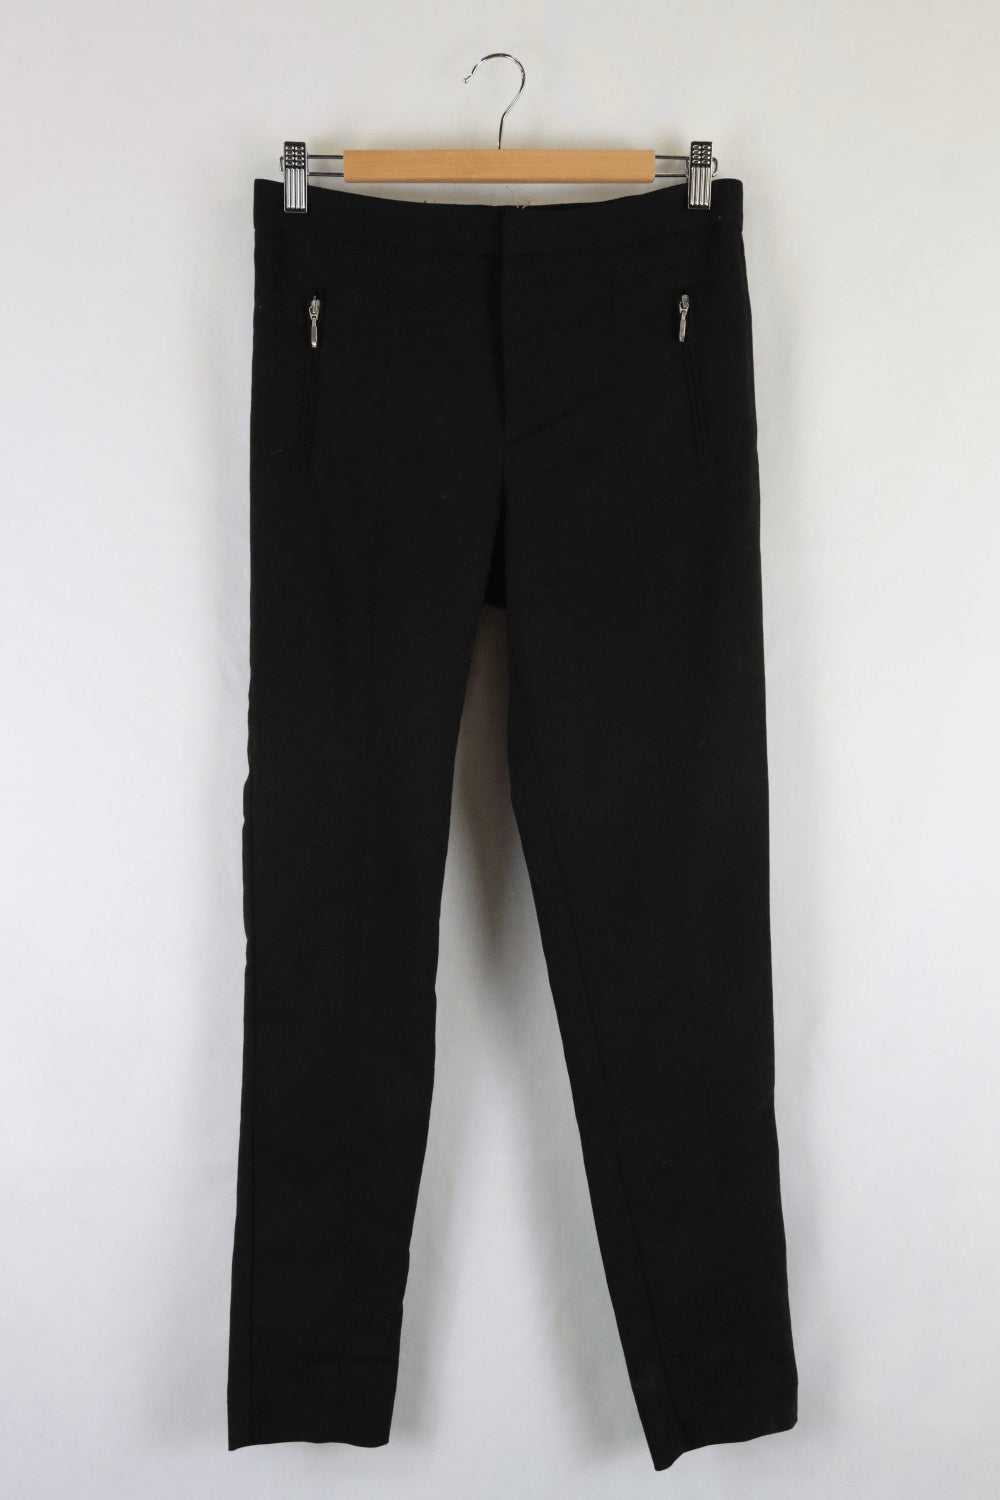 Zara Black Pants S